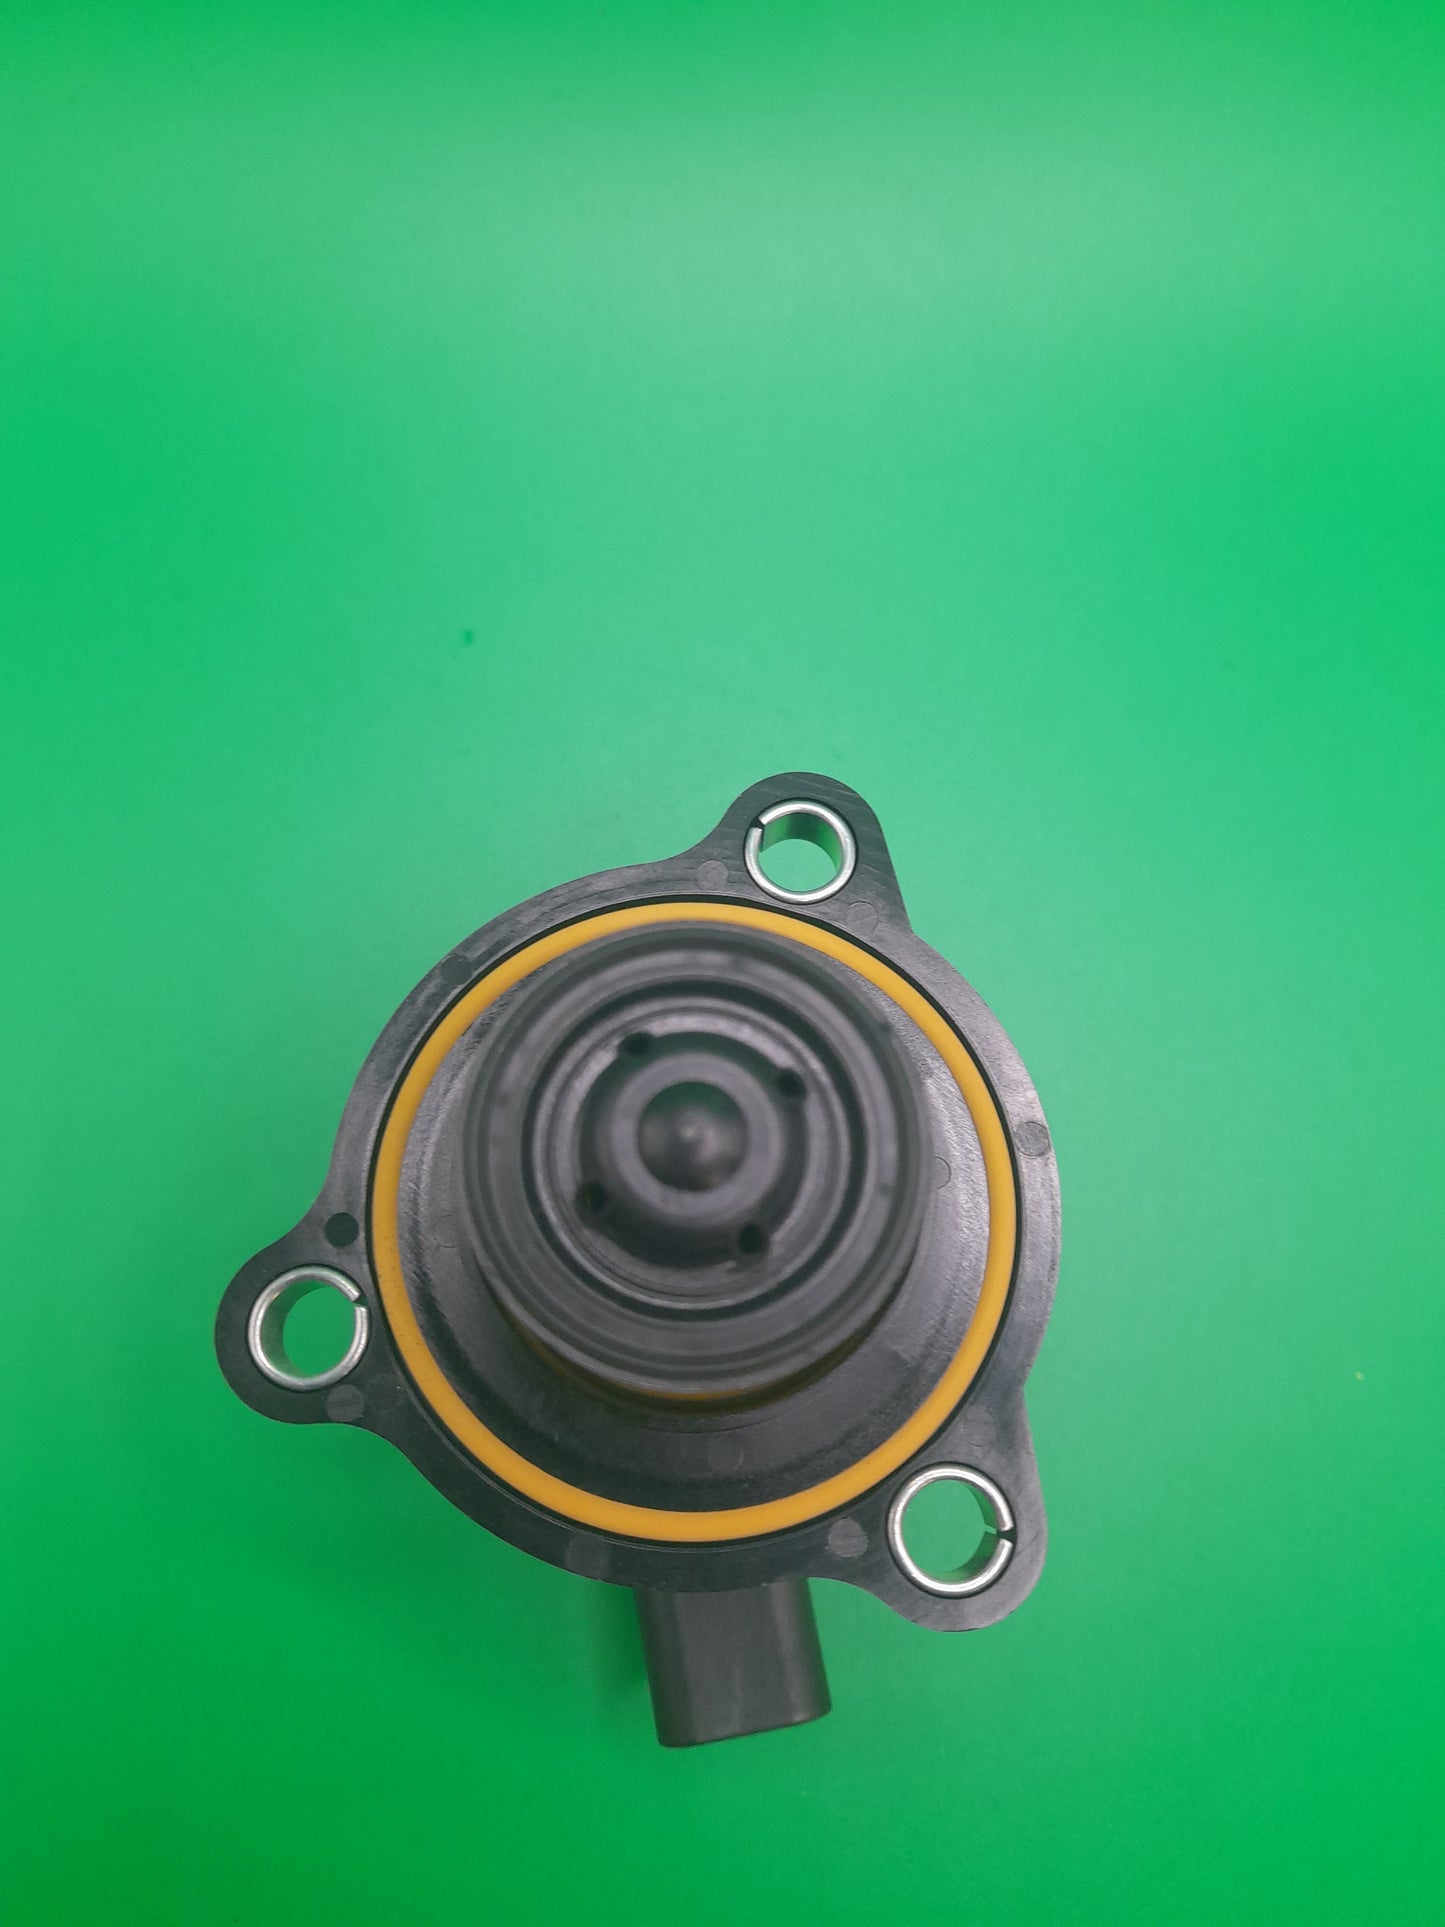 Turbo charger diverter valve